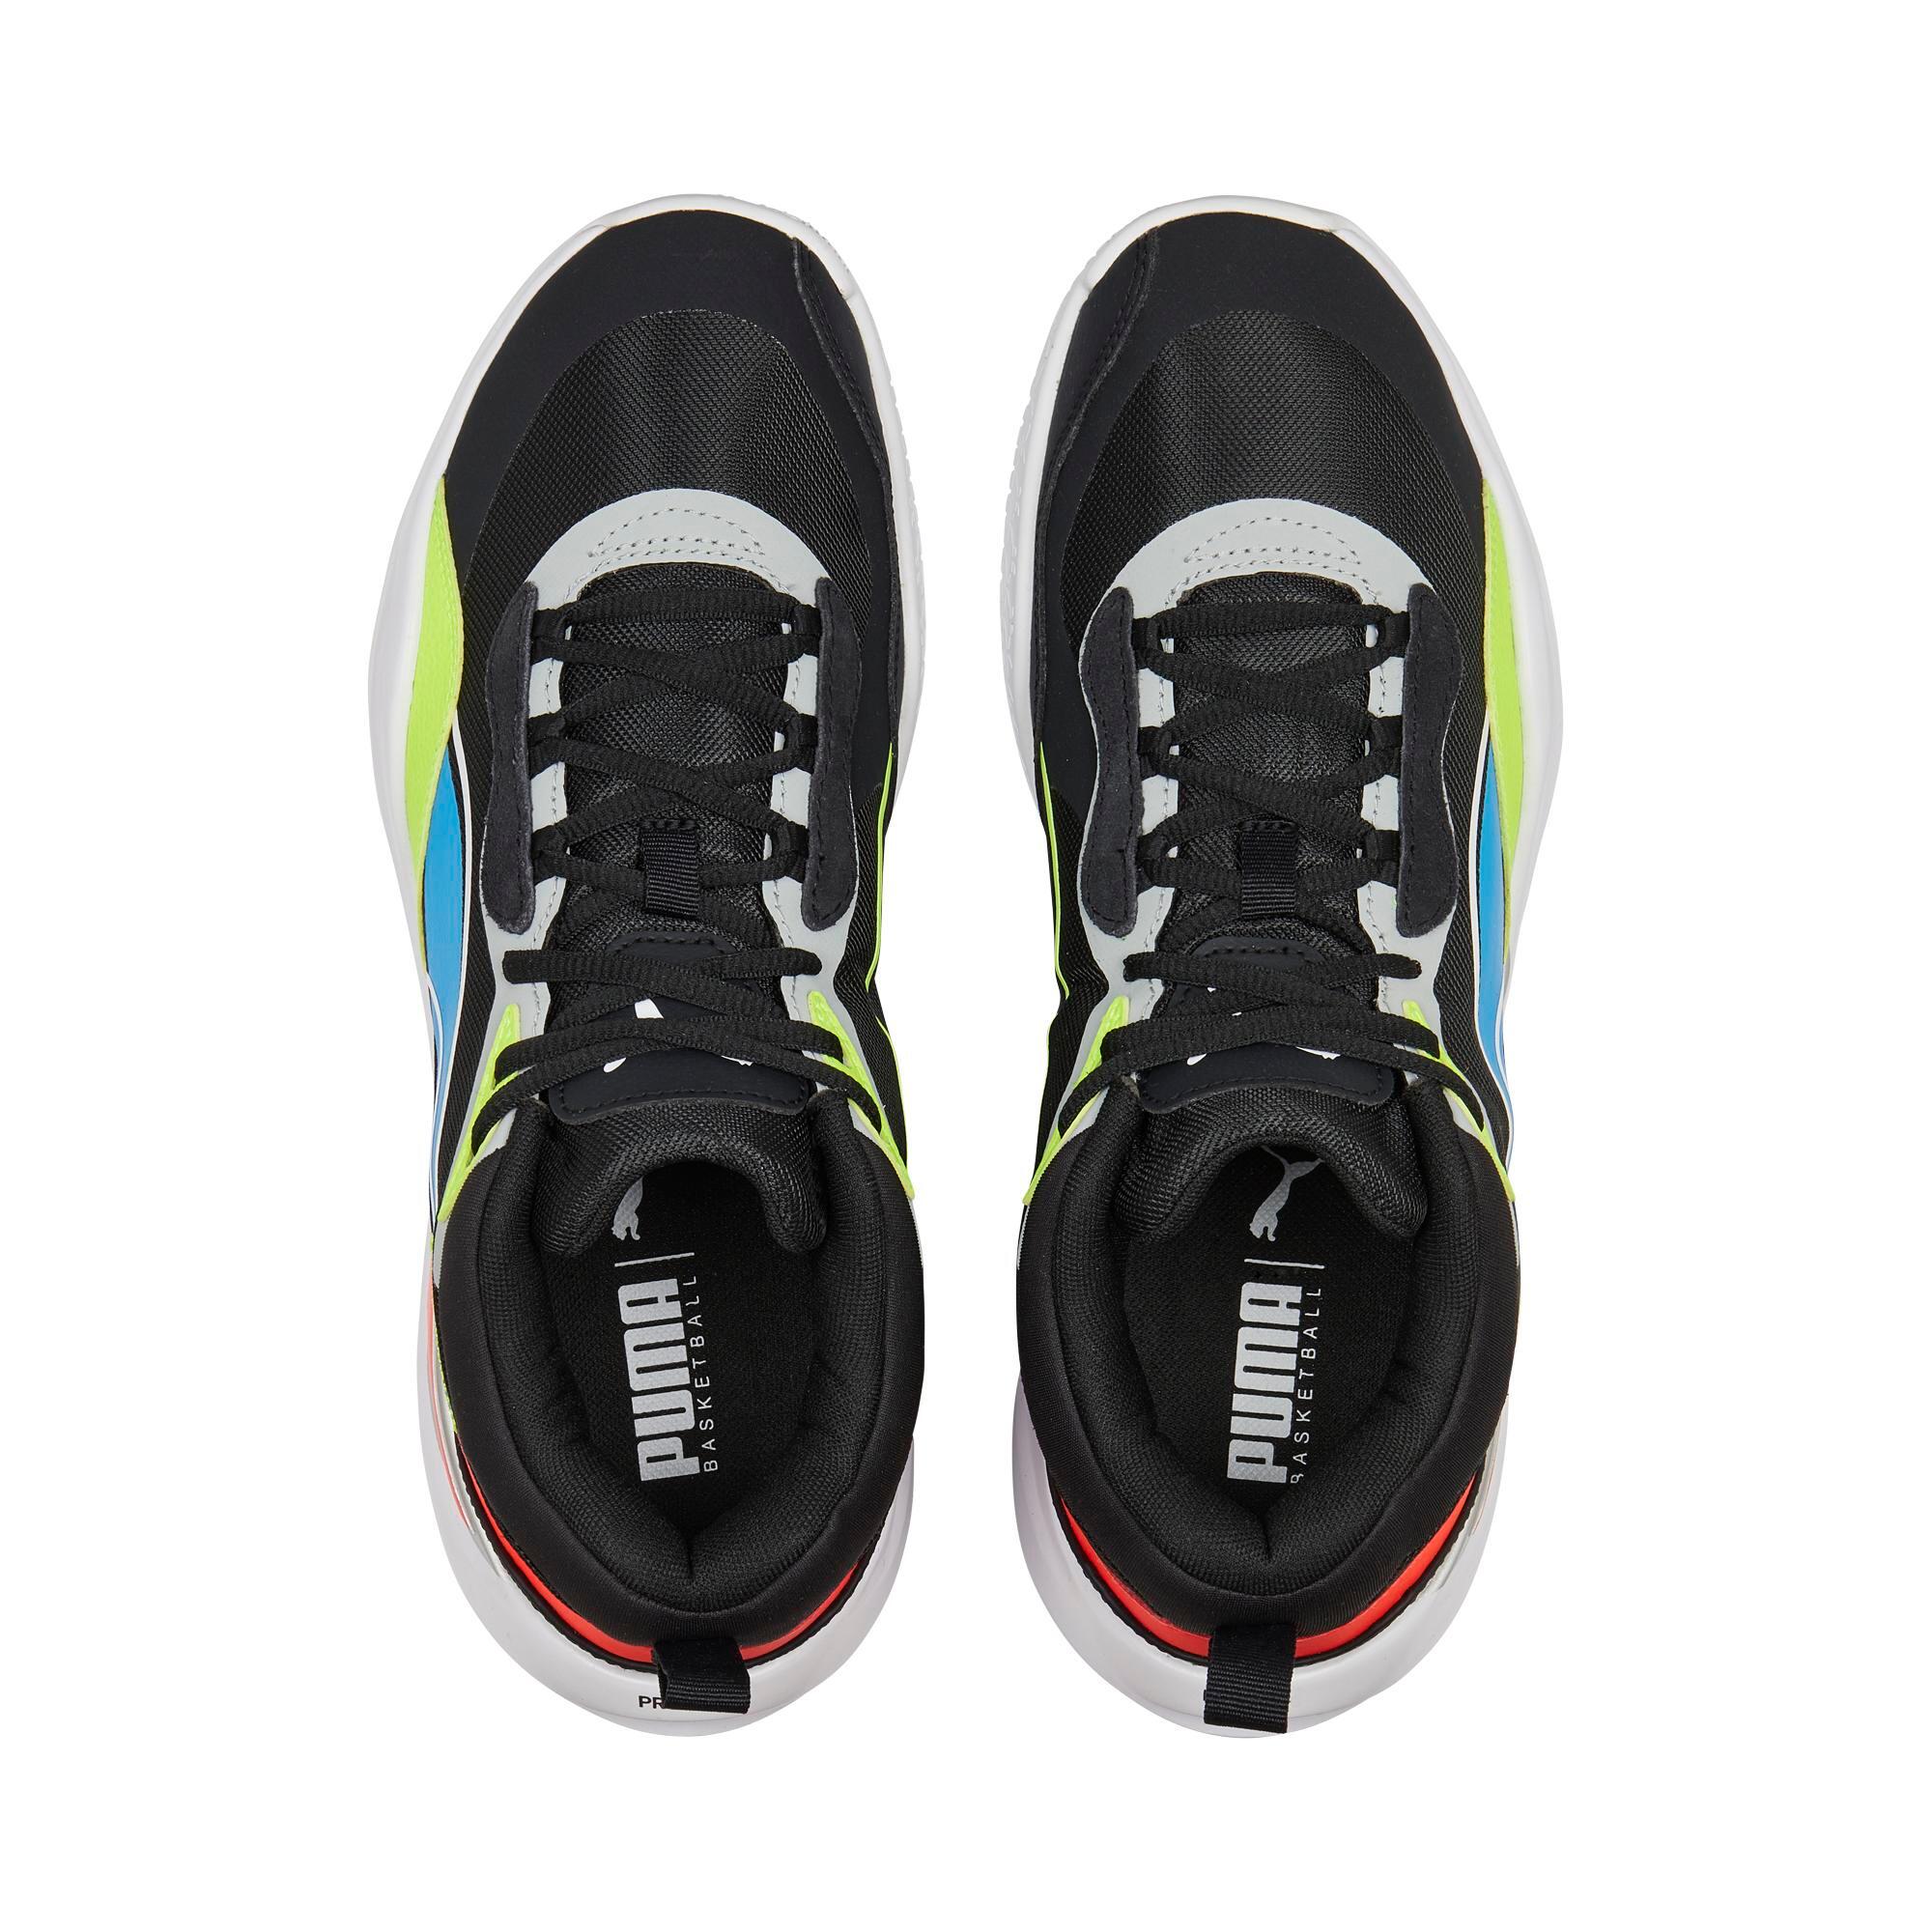 Men's Basketball Shoes Playmaker Pro Jet - Lime/Black 4/5